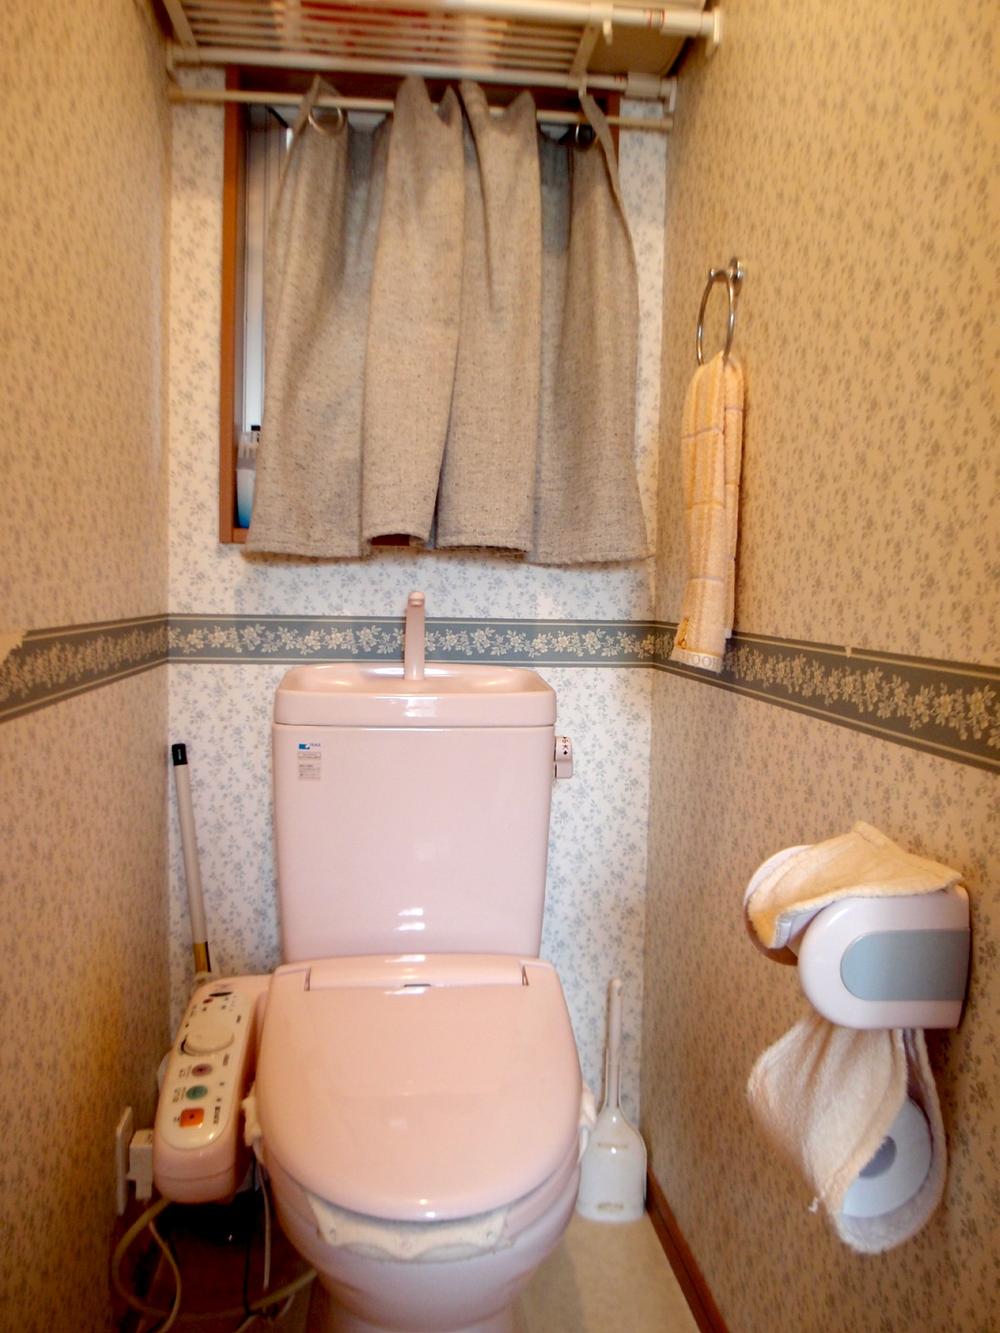 Toilet. Room (August 2013 shooting)